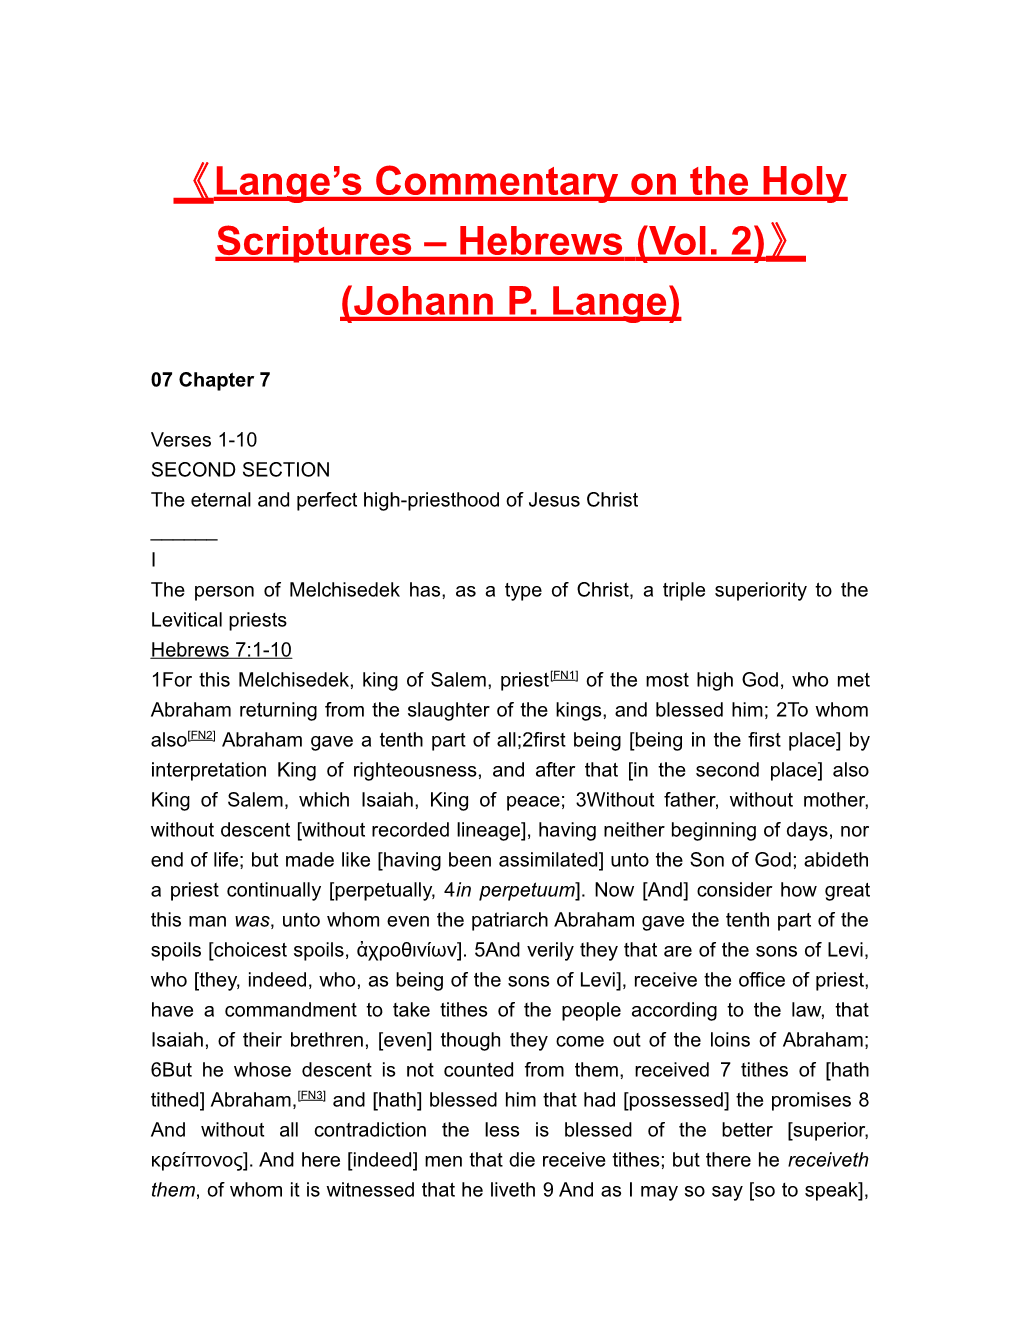 Lange S Commentary on the Holy Scriptures Hebrews (Vol. 2) (Johann P. Lange)